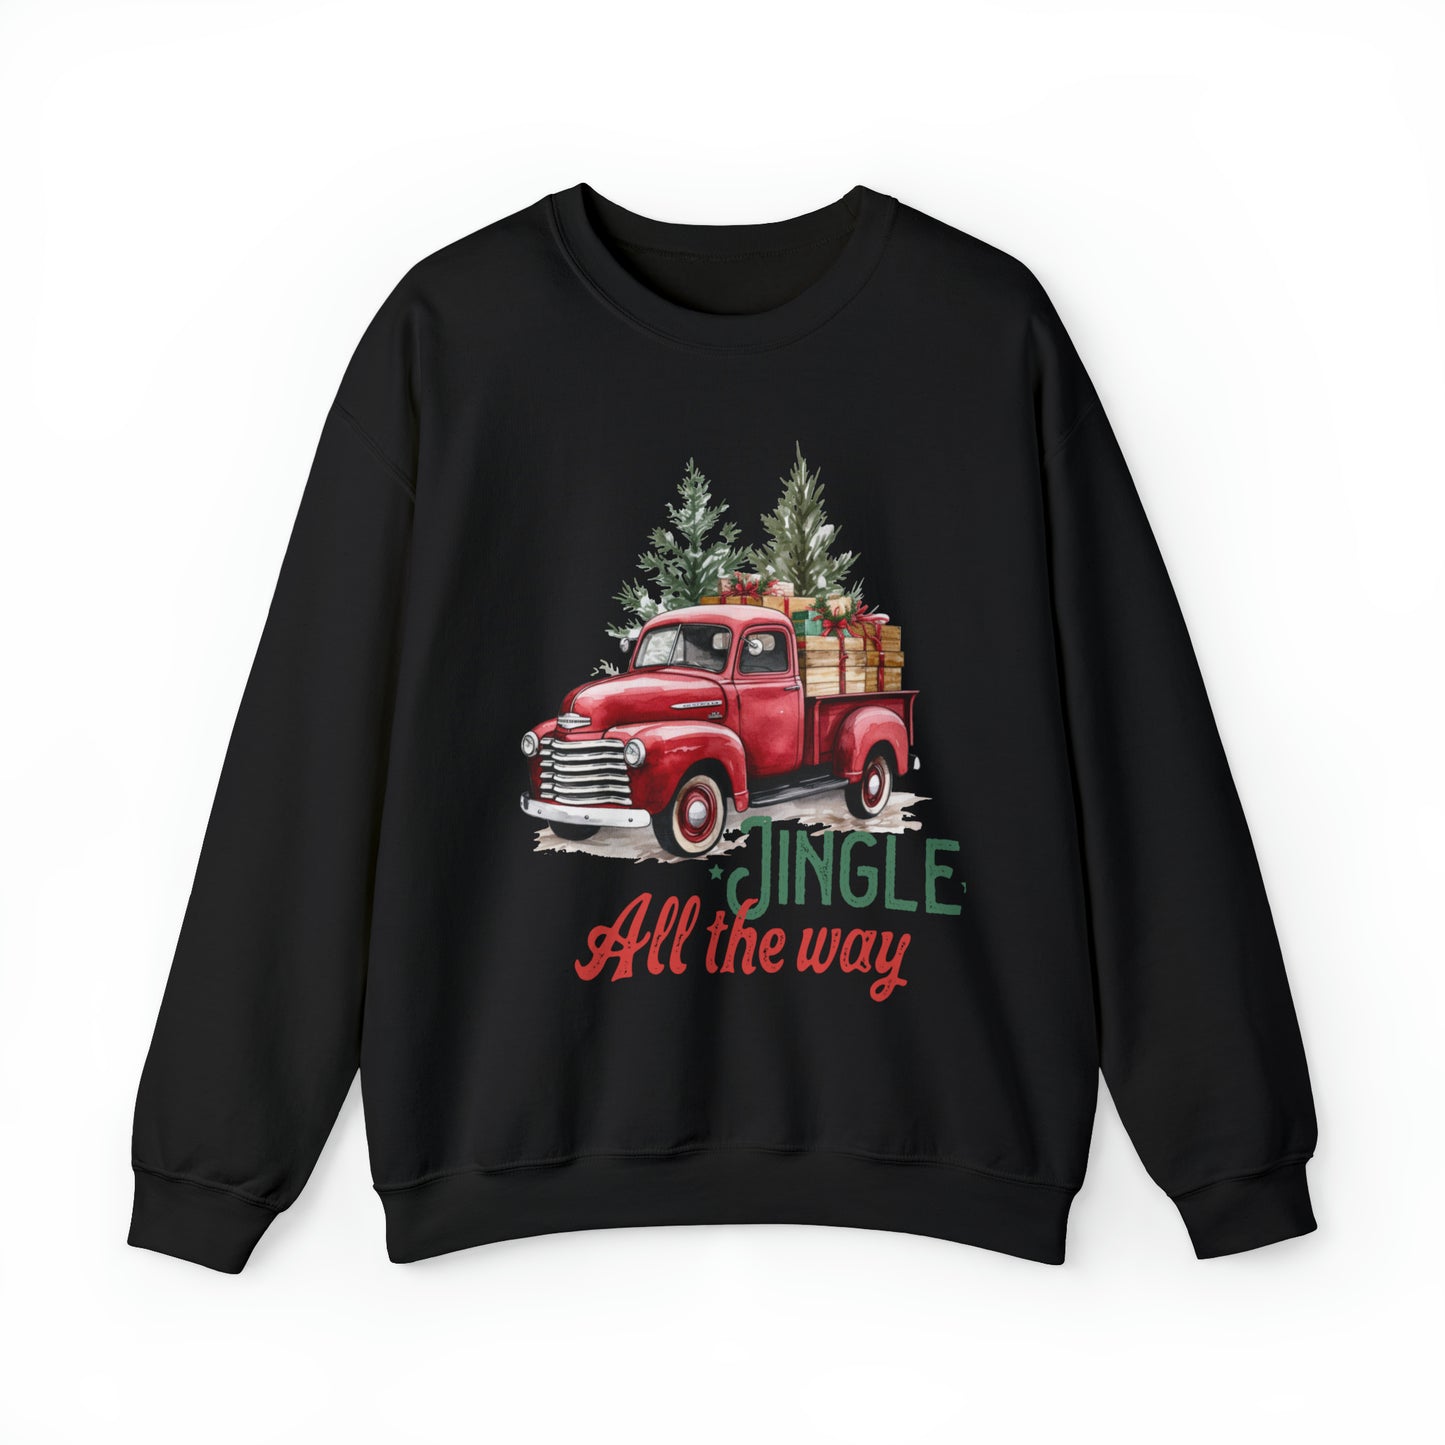 Jingle All The Way Women's Christmas Sweatshirt